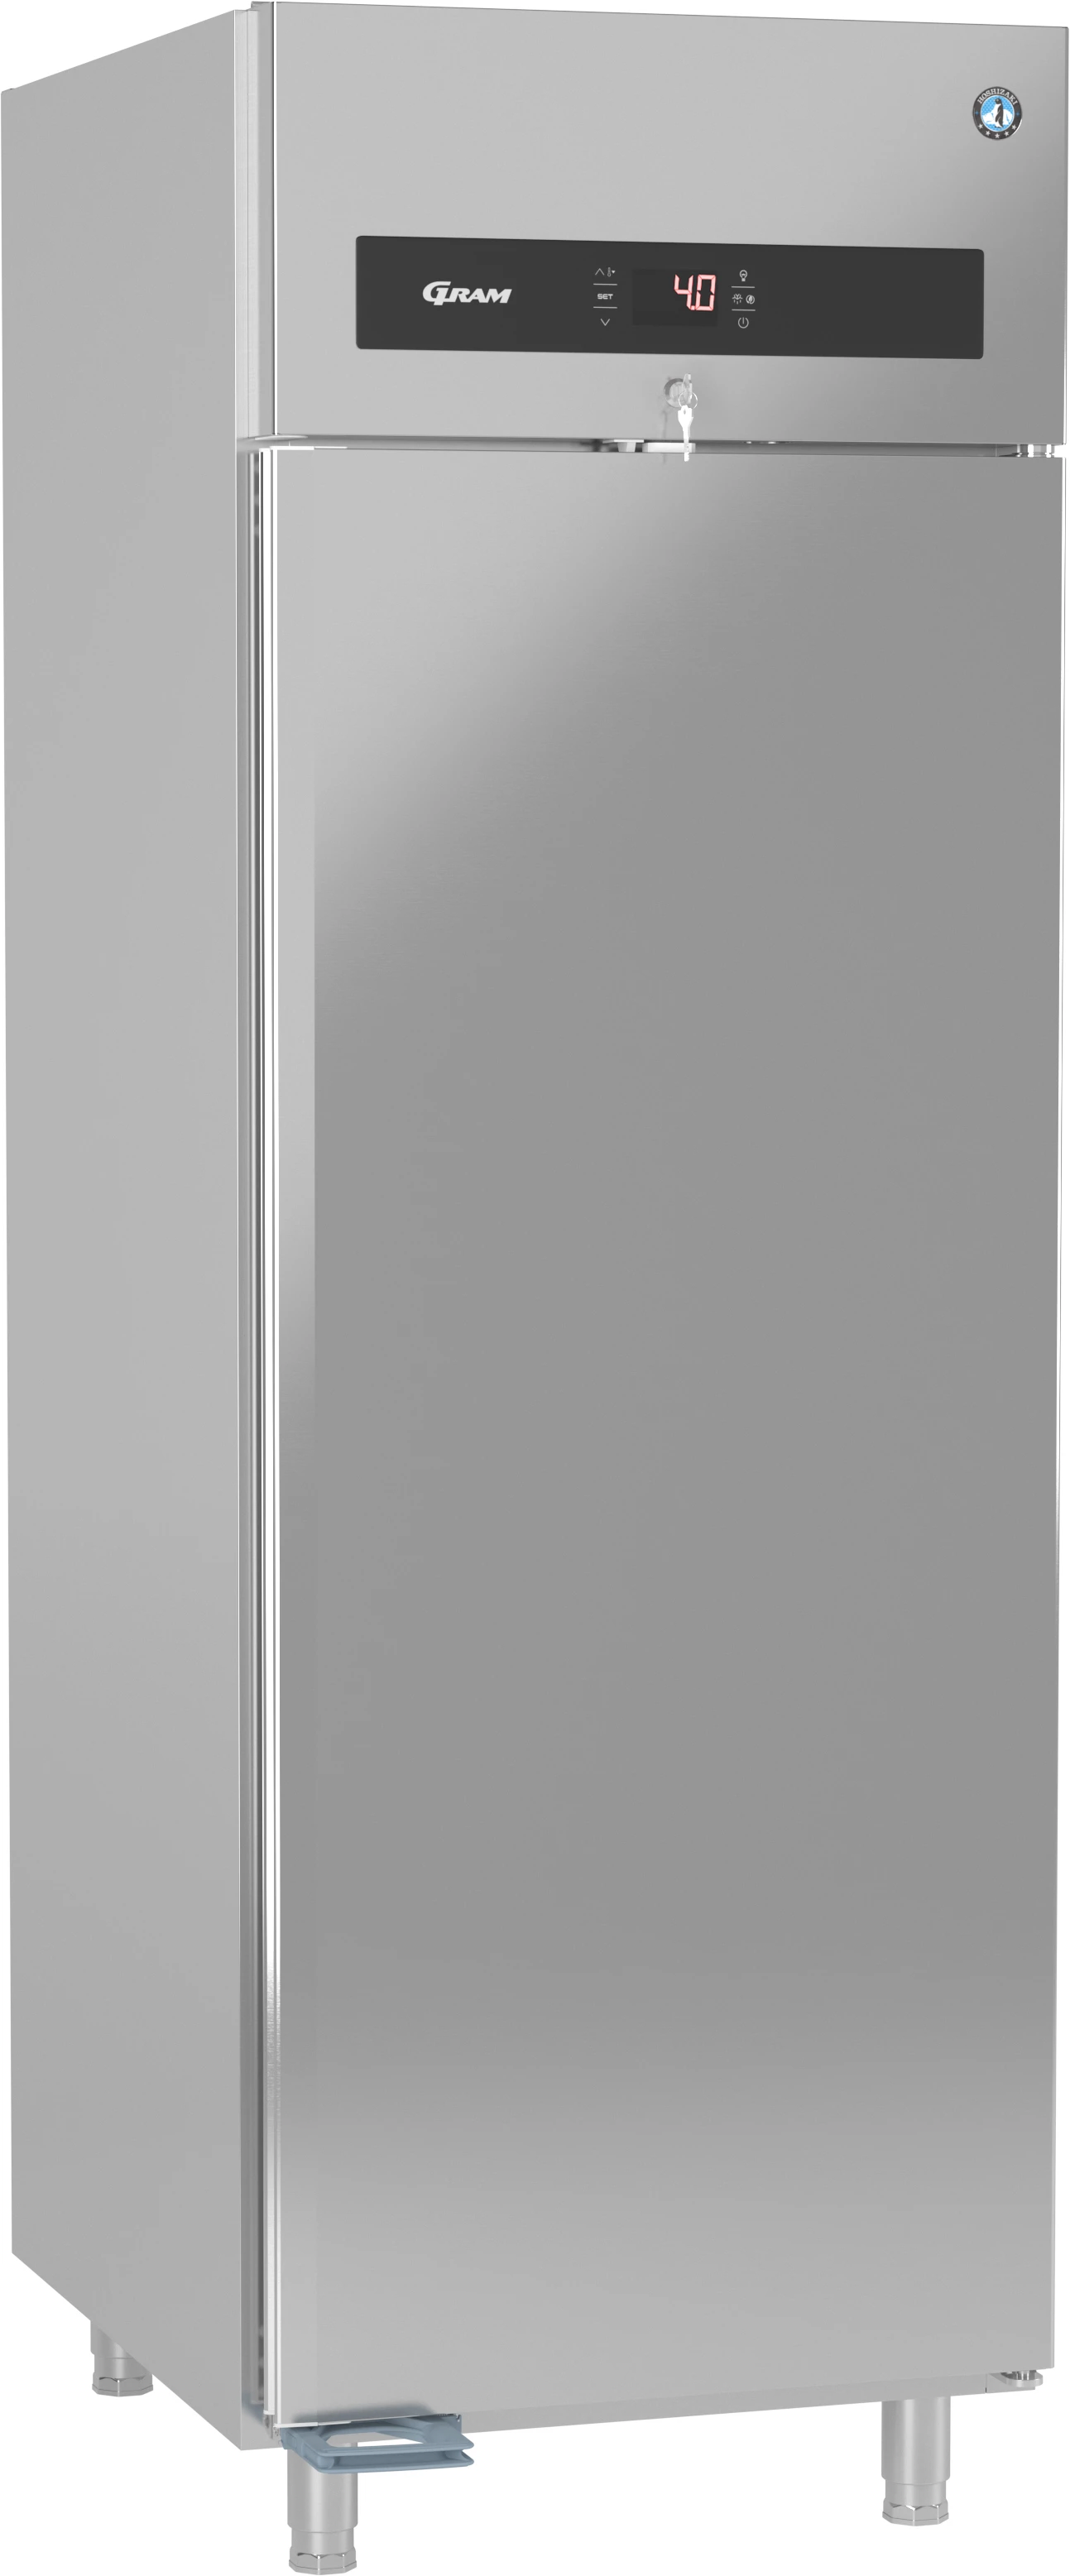 Gram Premier M70 L DR køleskab